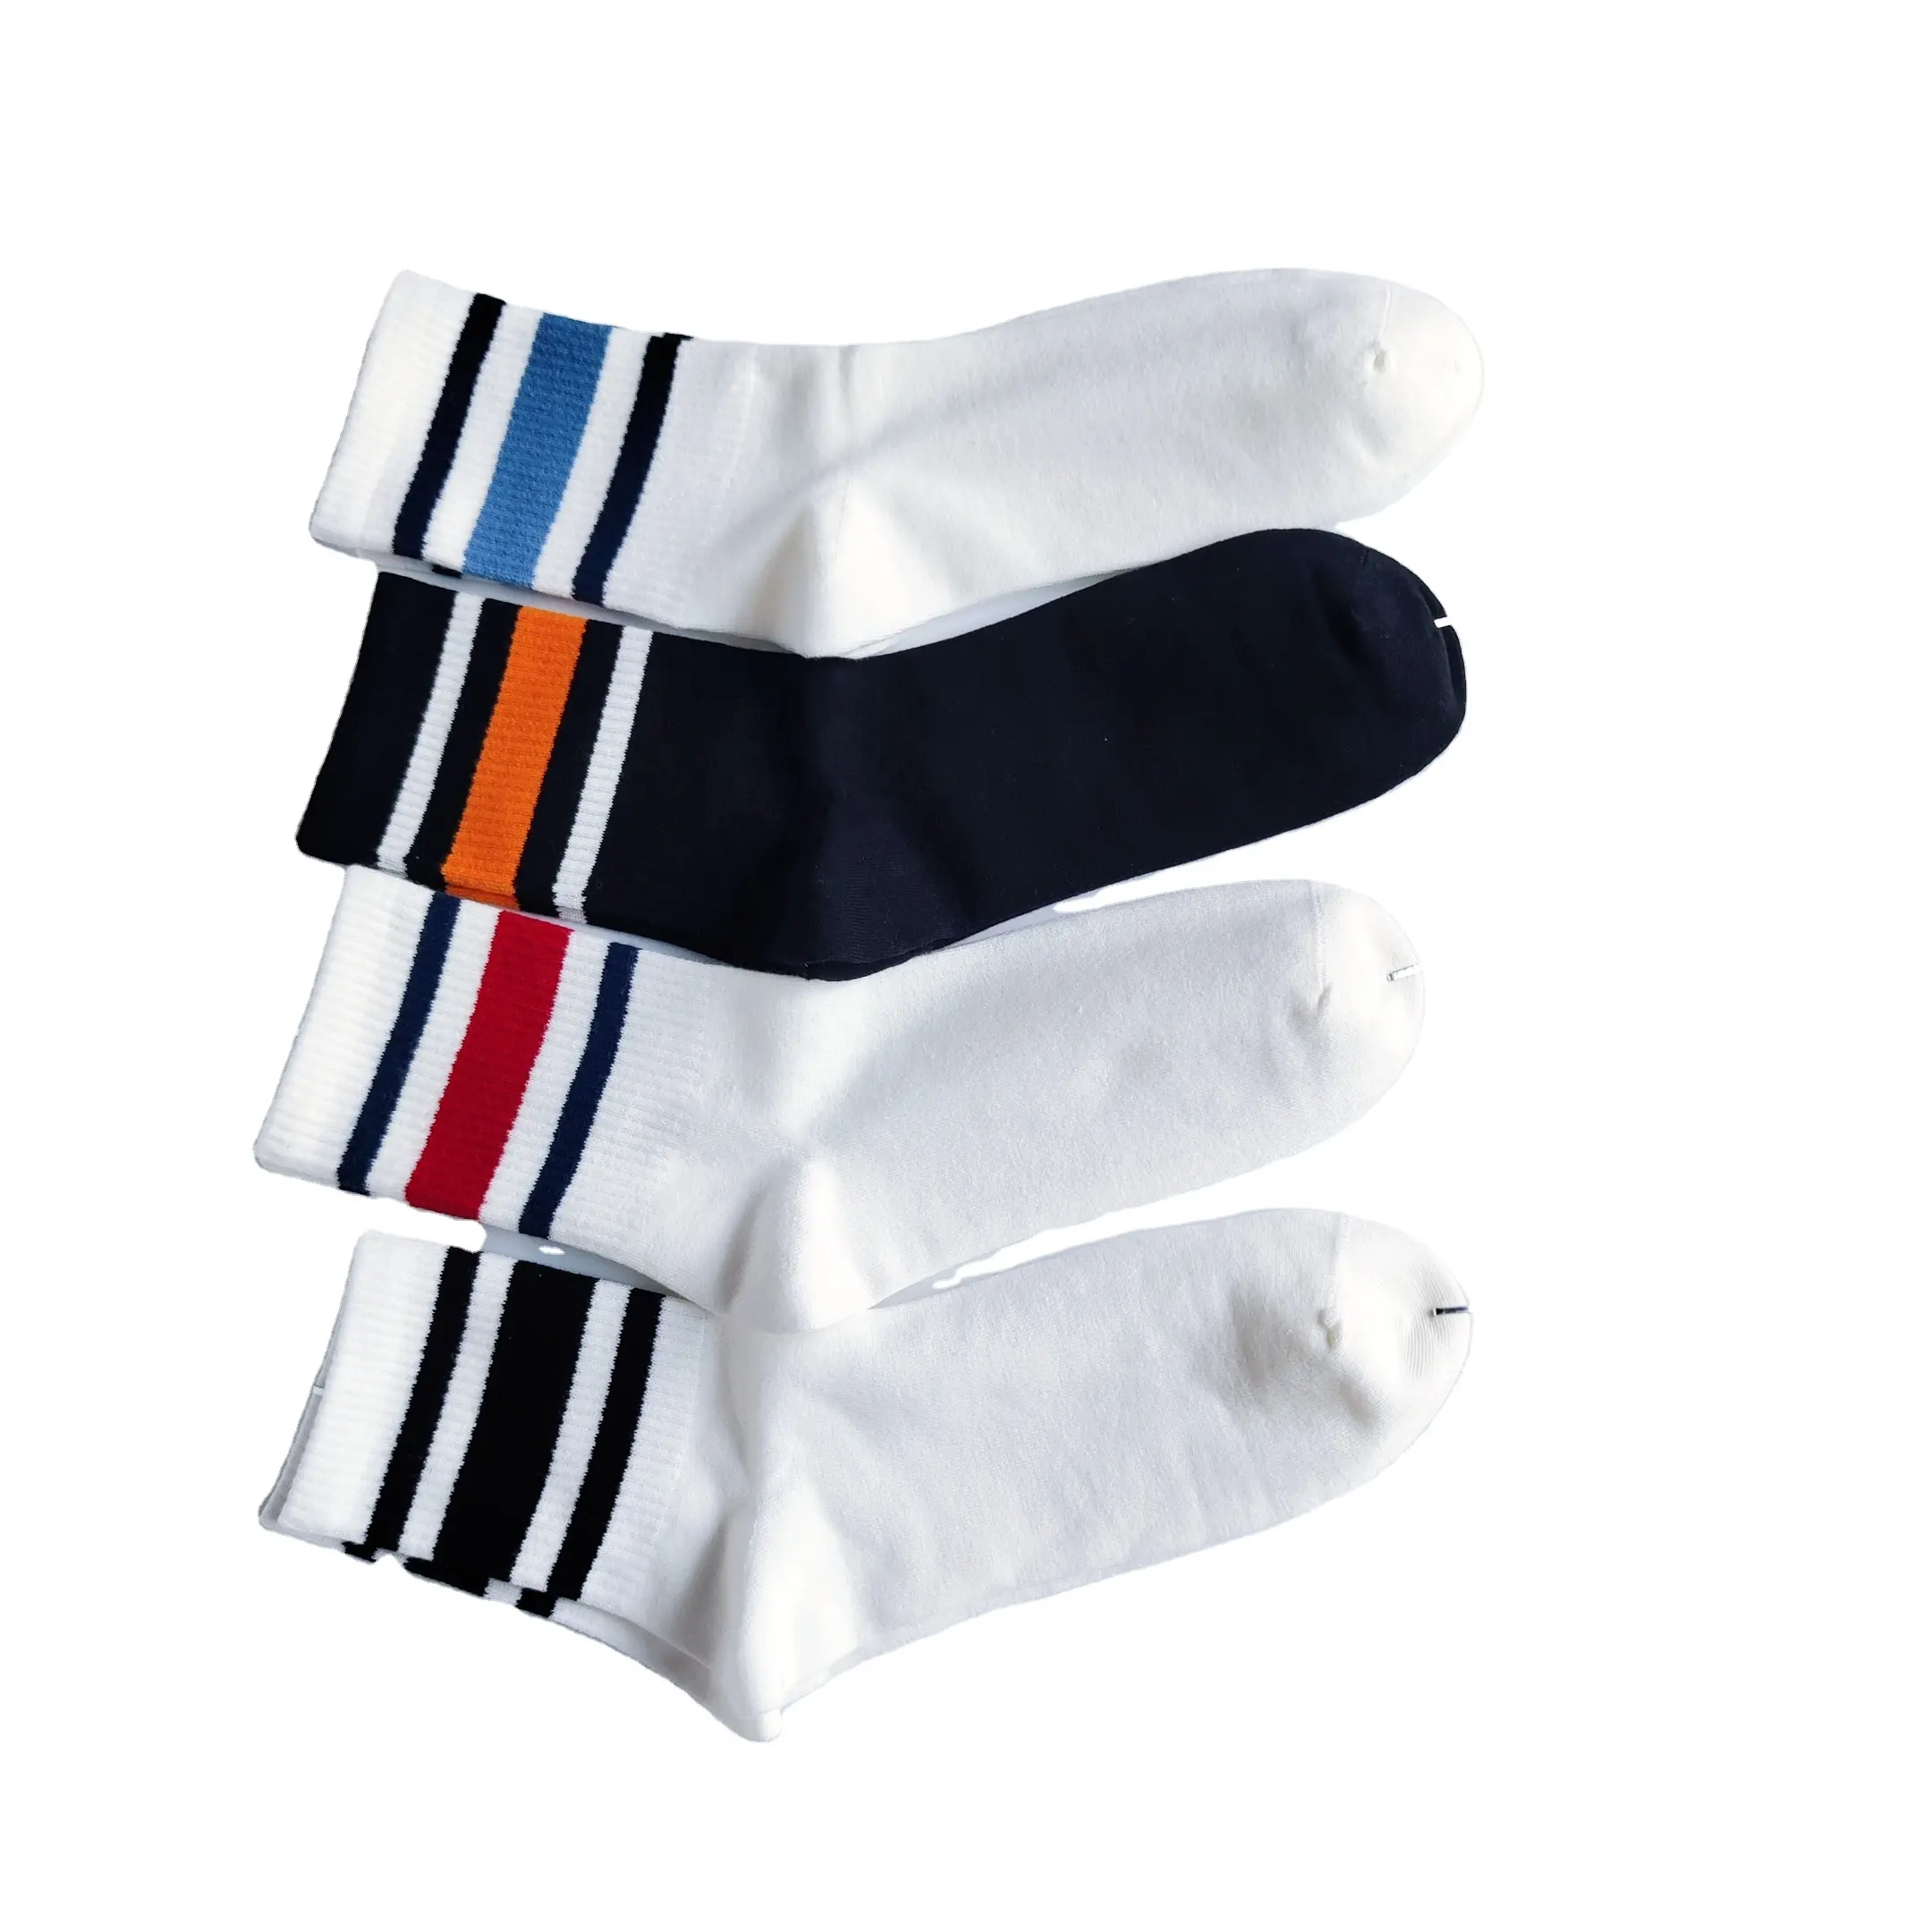 Chaussettes d'hiver à rayures Femmes Filles Sport Casual Socks Hosiery Soft Medium Tube Long Socks With Low quantité minimale de commande